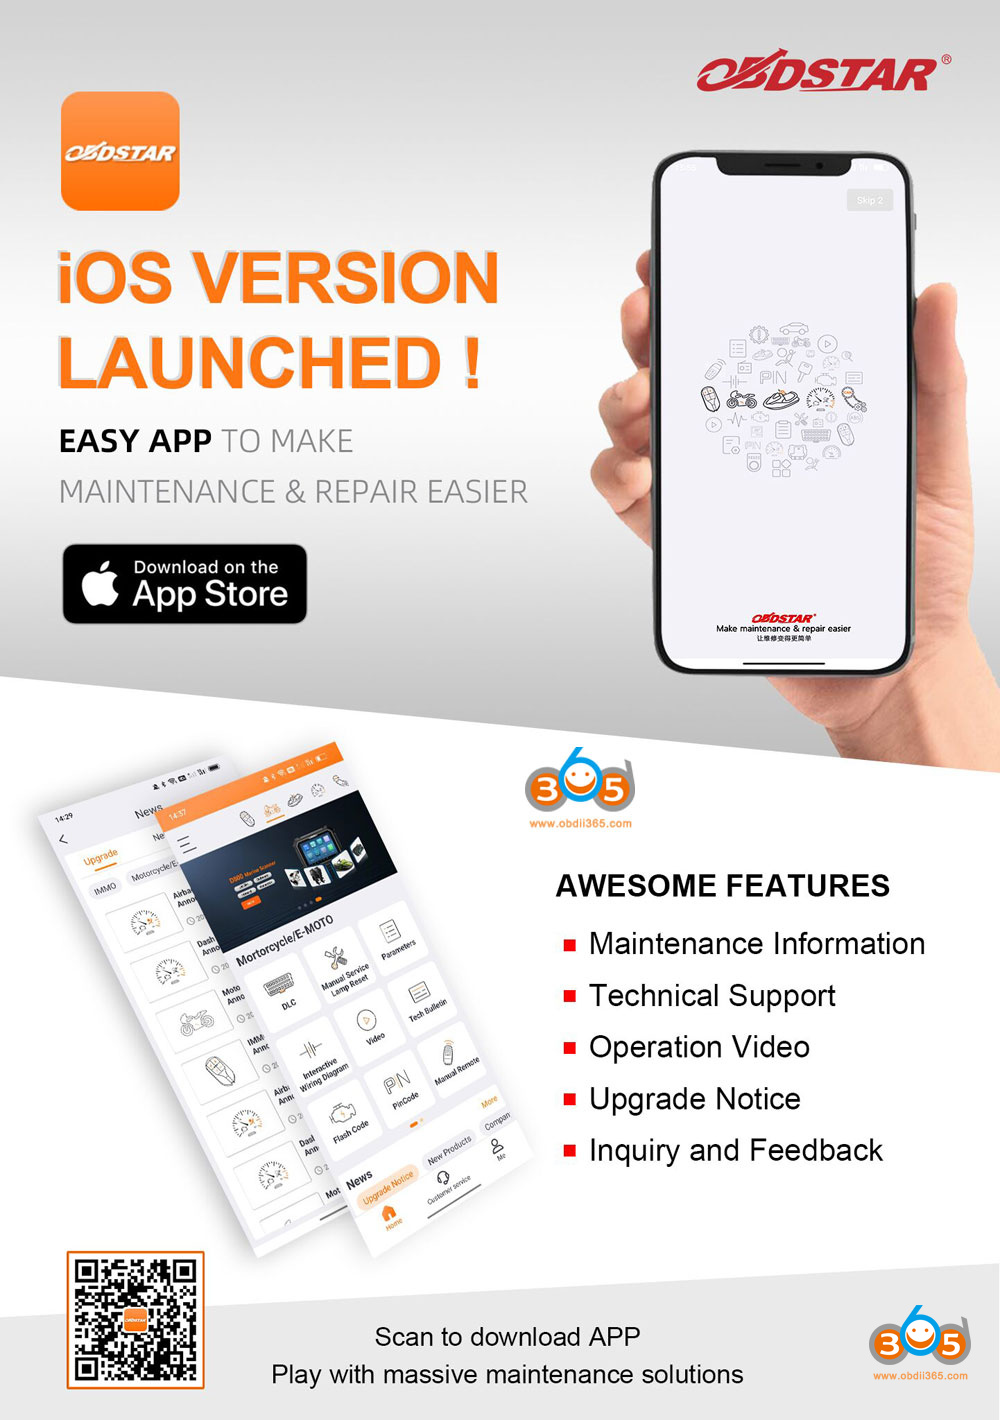 Obdstar App Ios Version